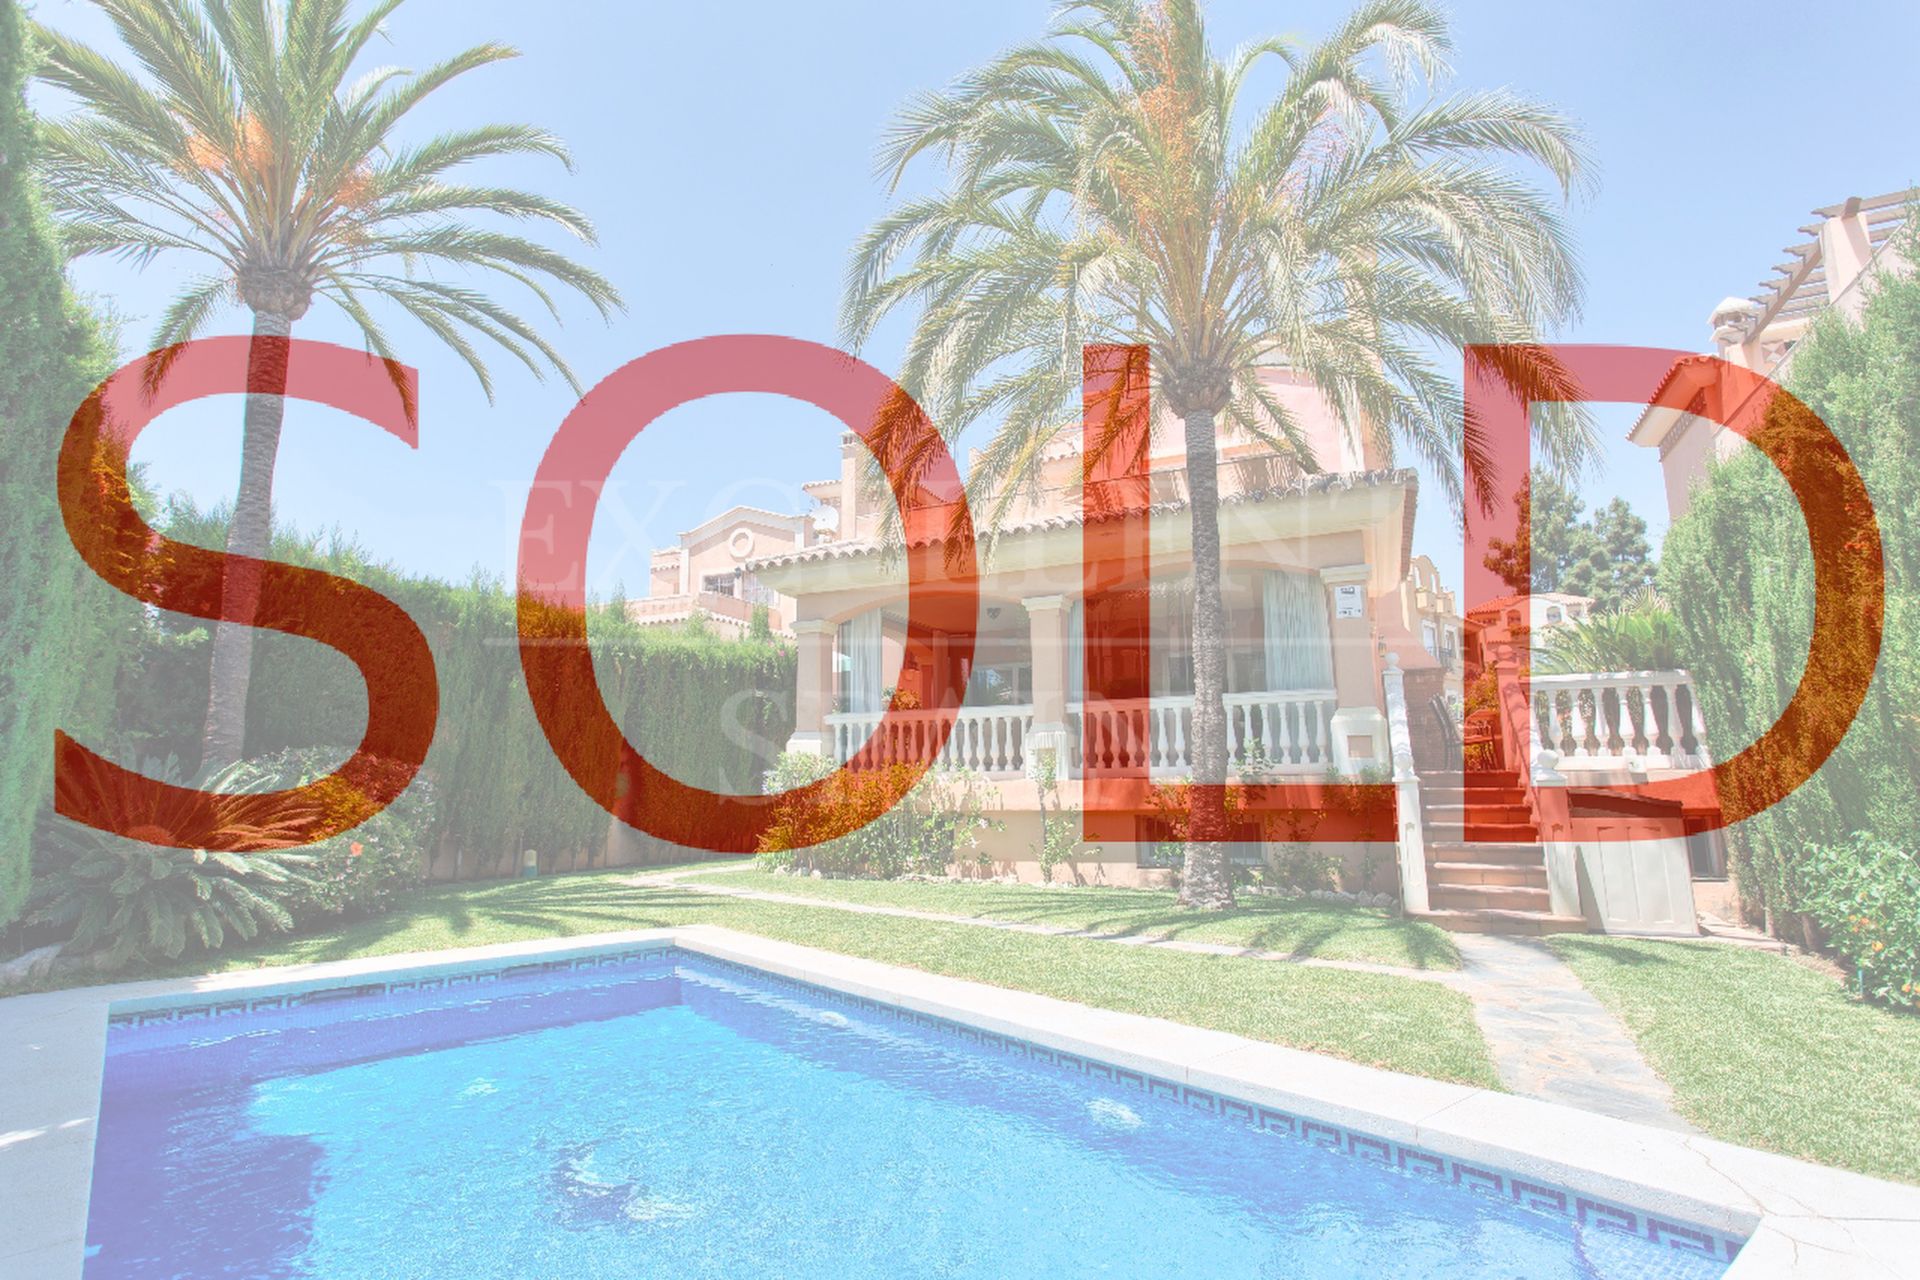 Zentrum von Marbella, Costa del Sol, geräumige Villa in Laufdistanz zu allen Annehmlichkeiten